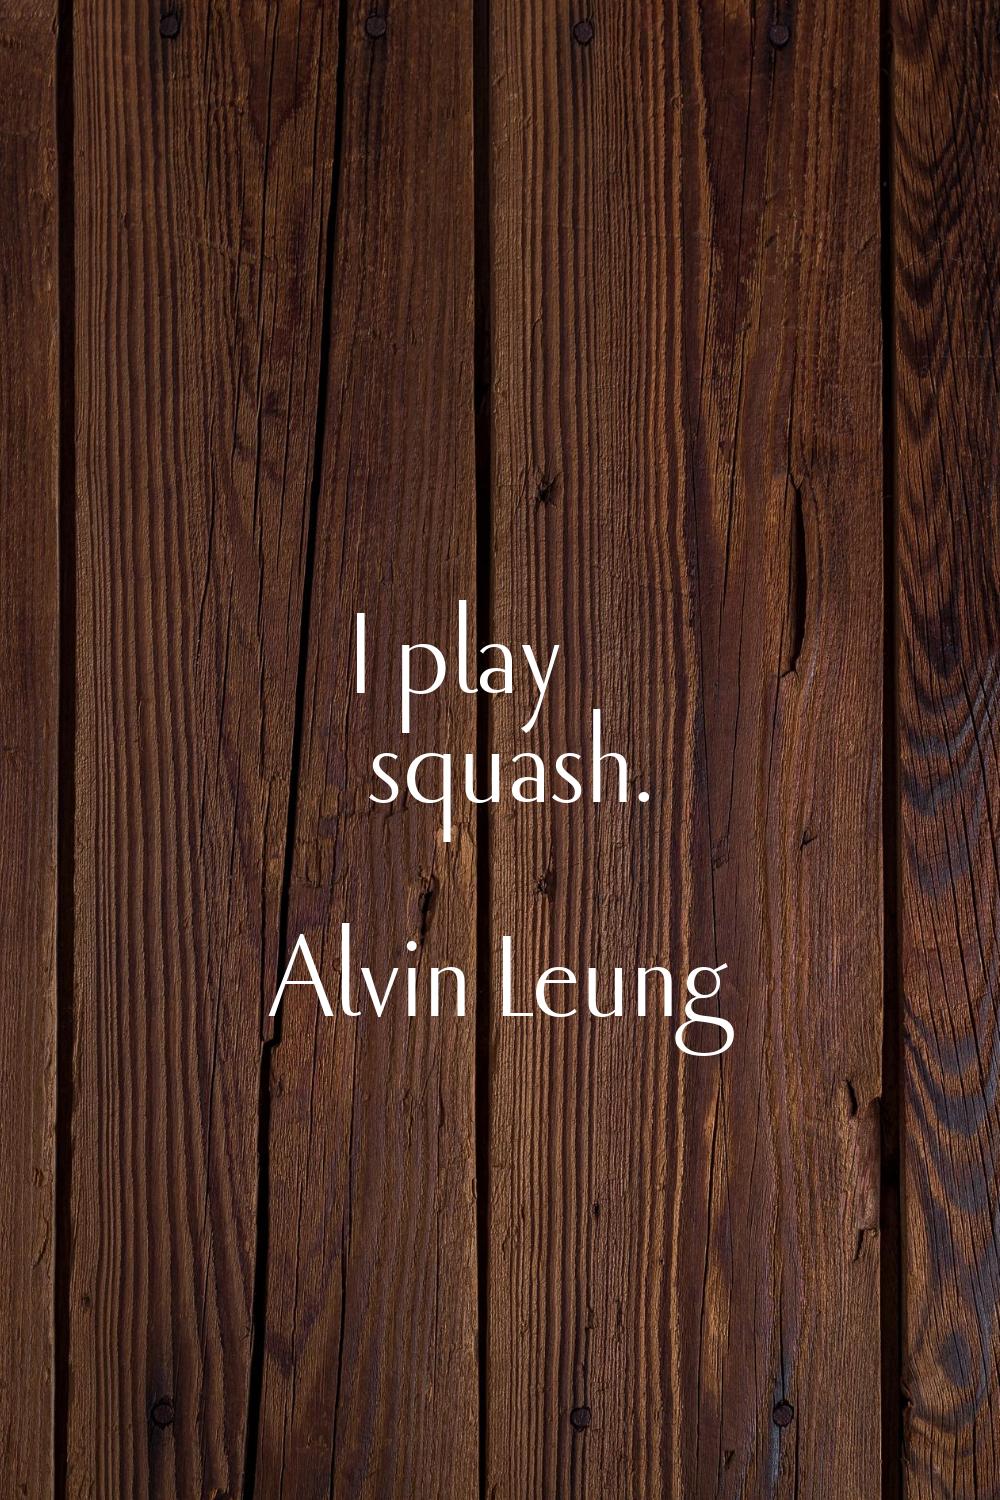 I play squash.